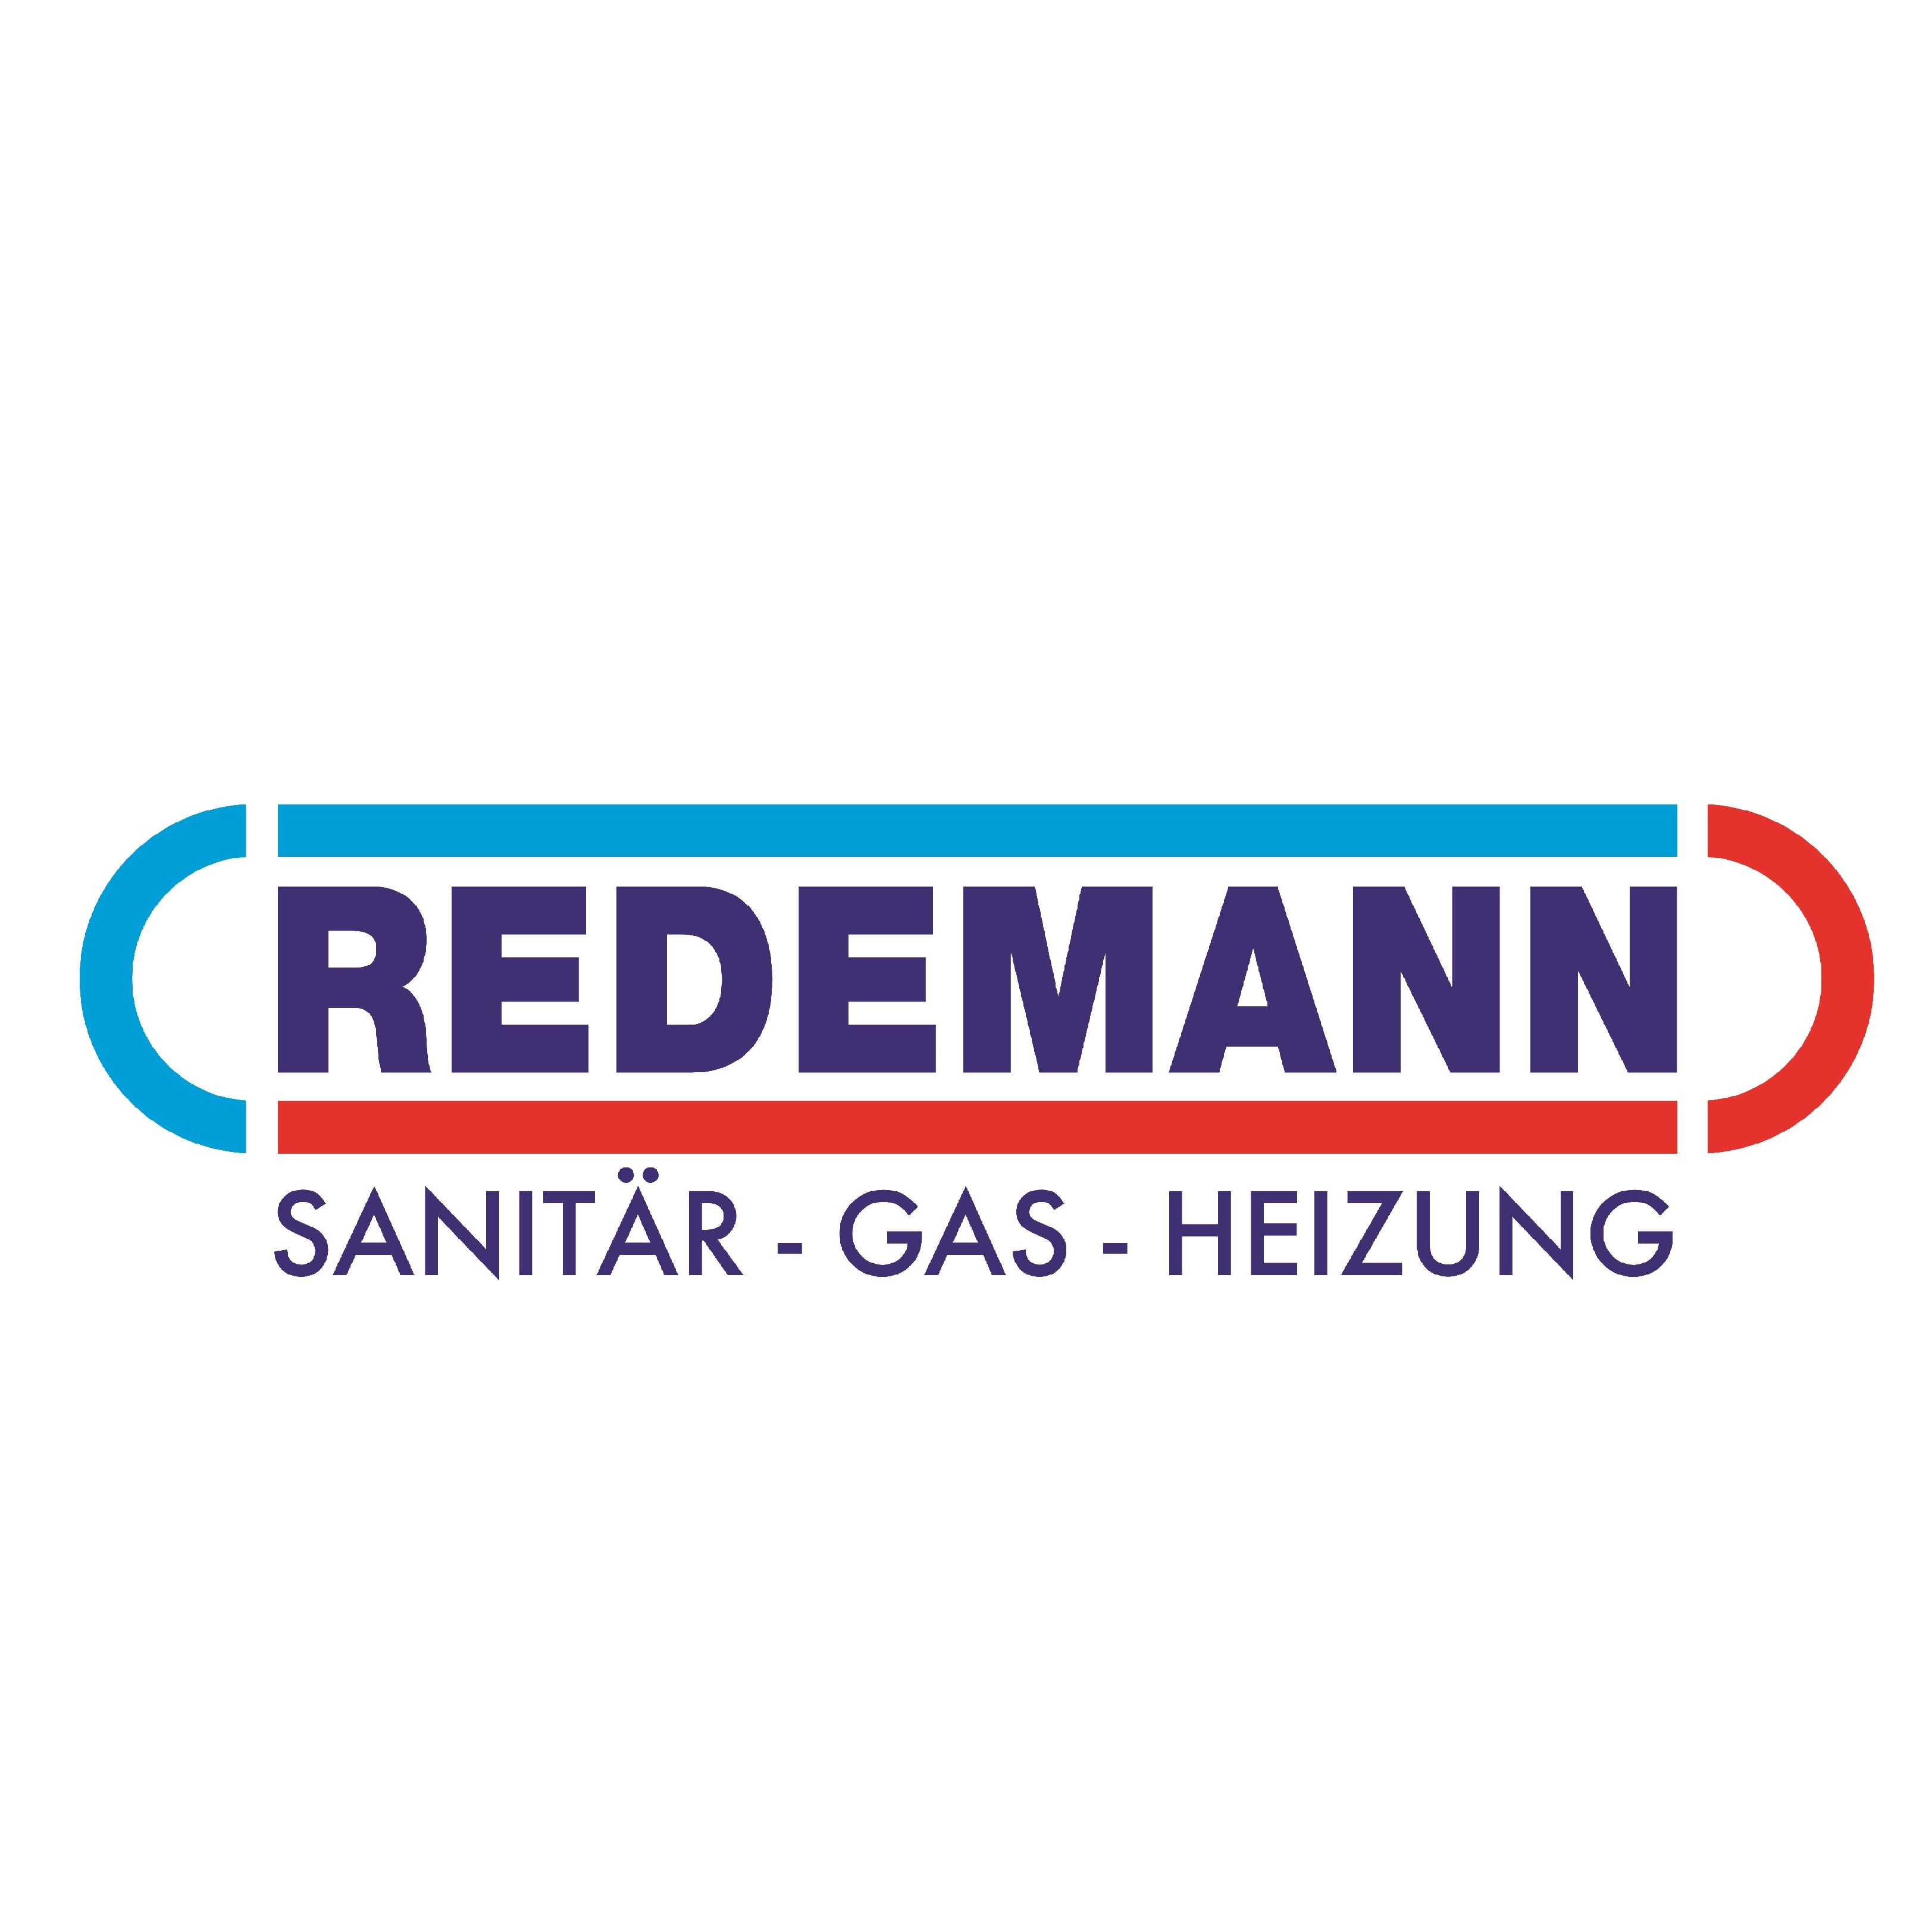 Redemann | Sanitär - Gas - Heizung